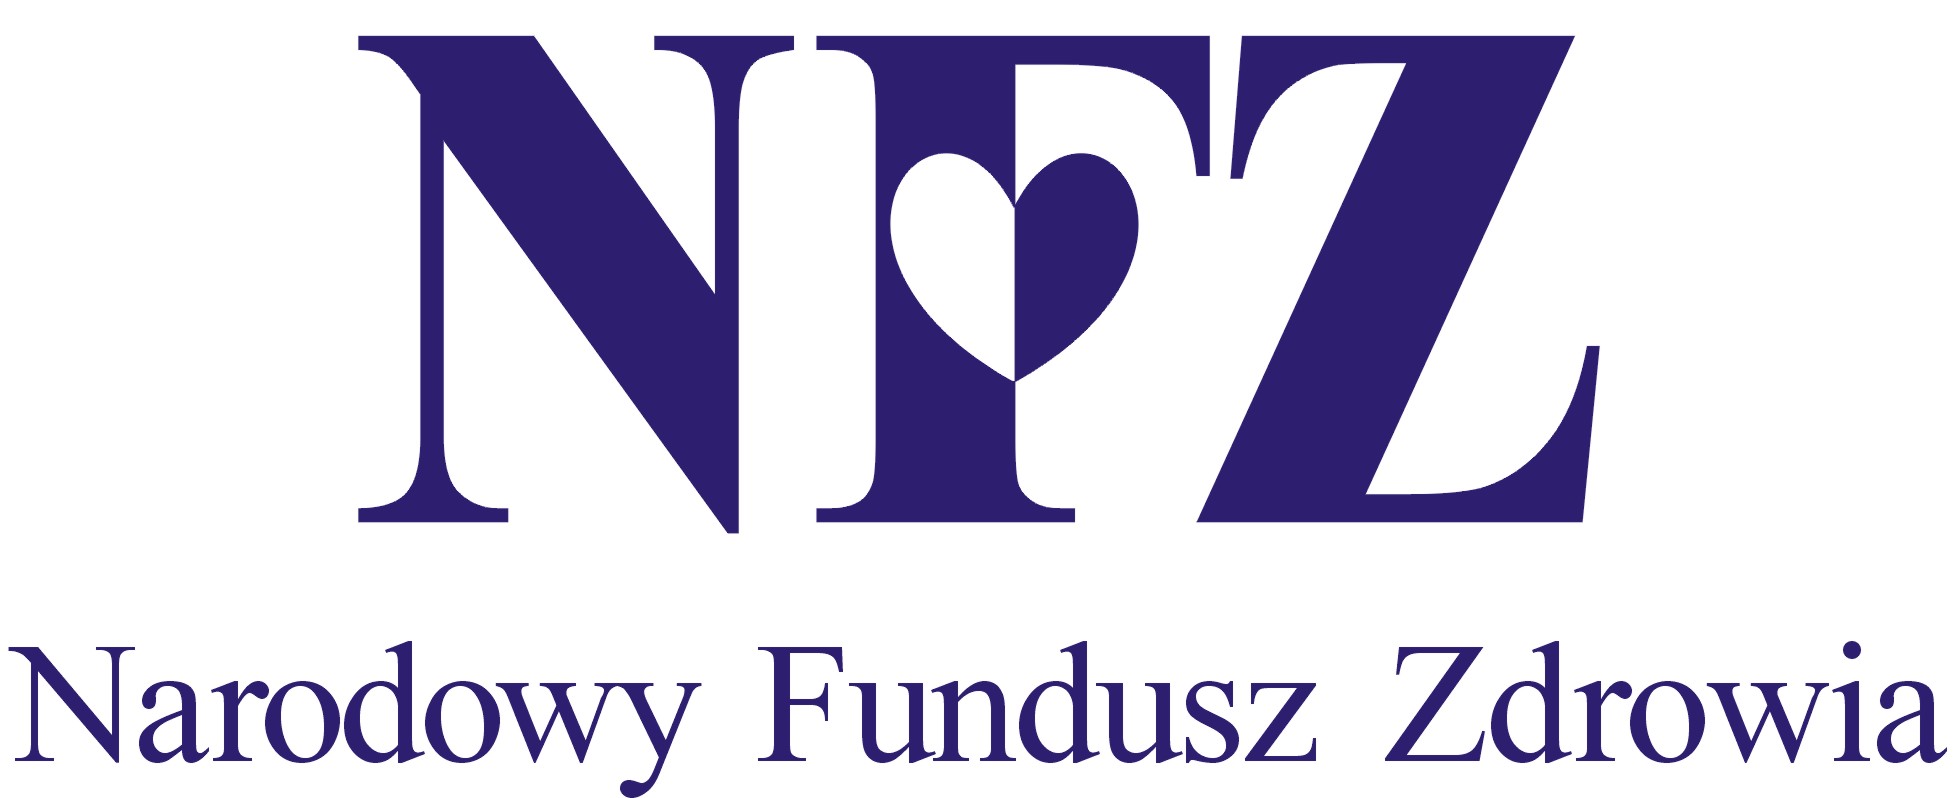 Narodowy Fundusz Zdrowia – logo